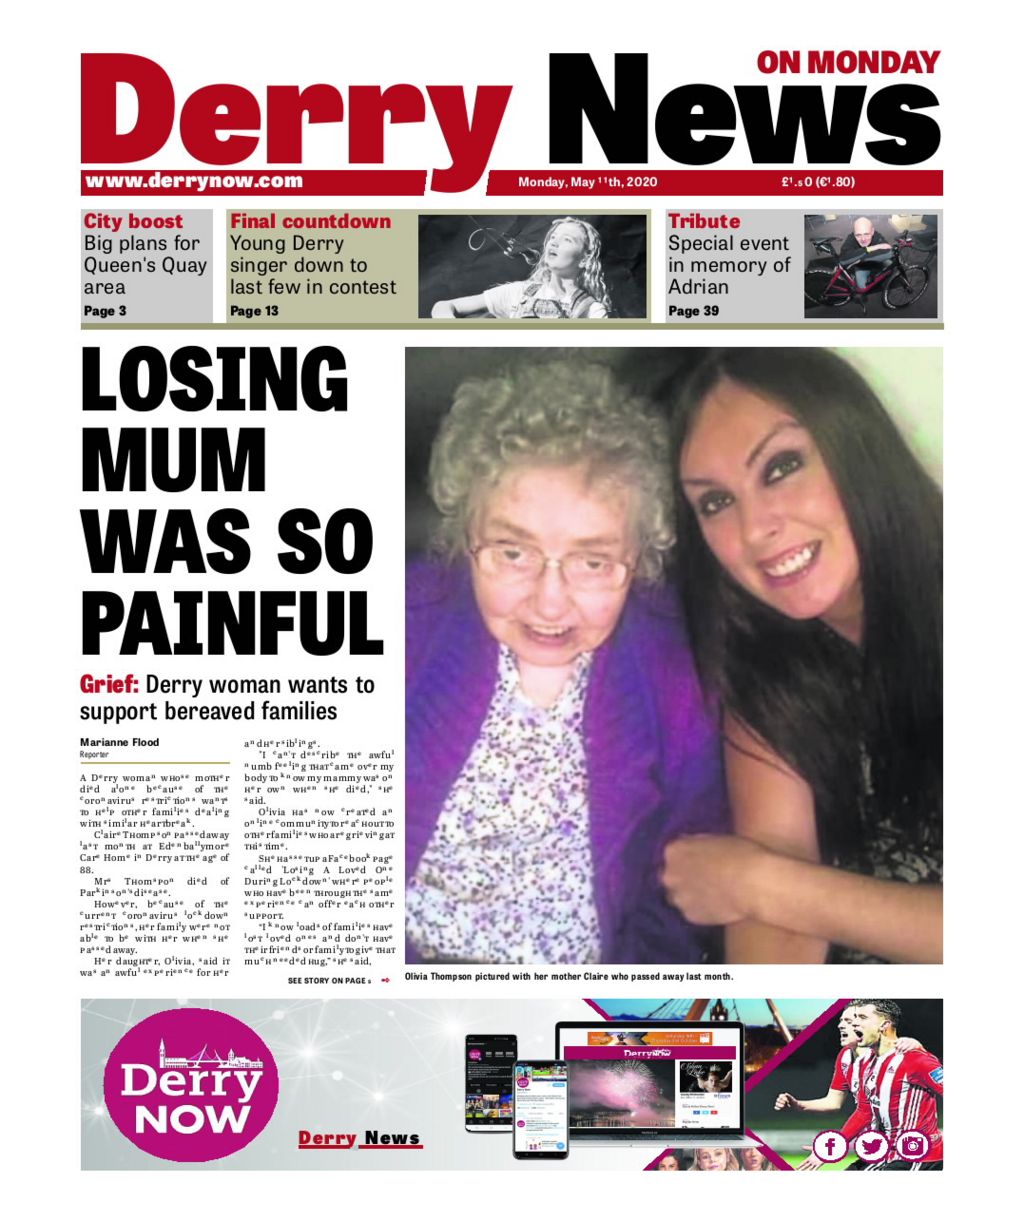 The Derry News